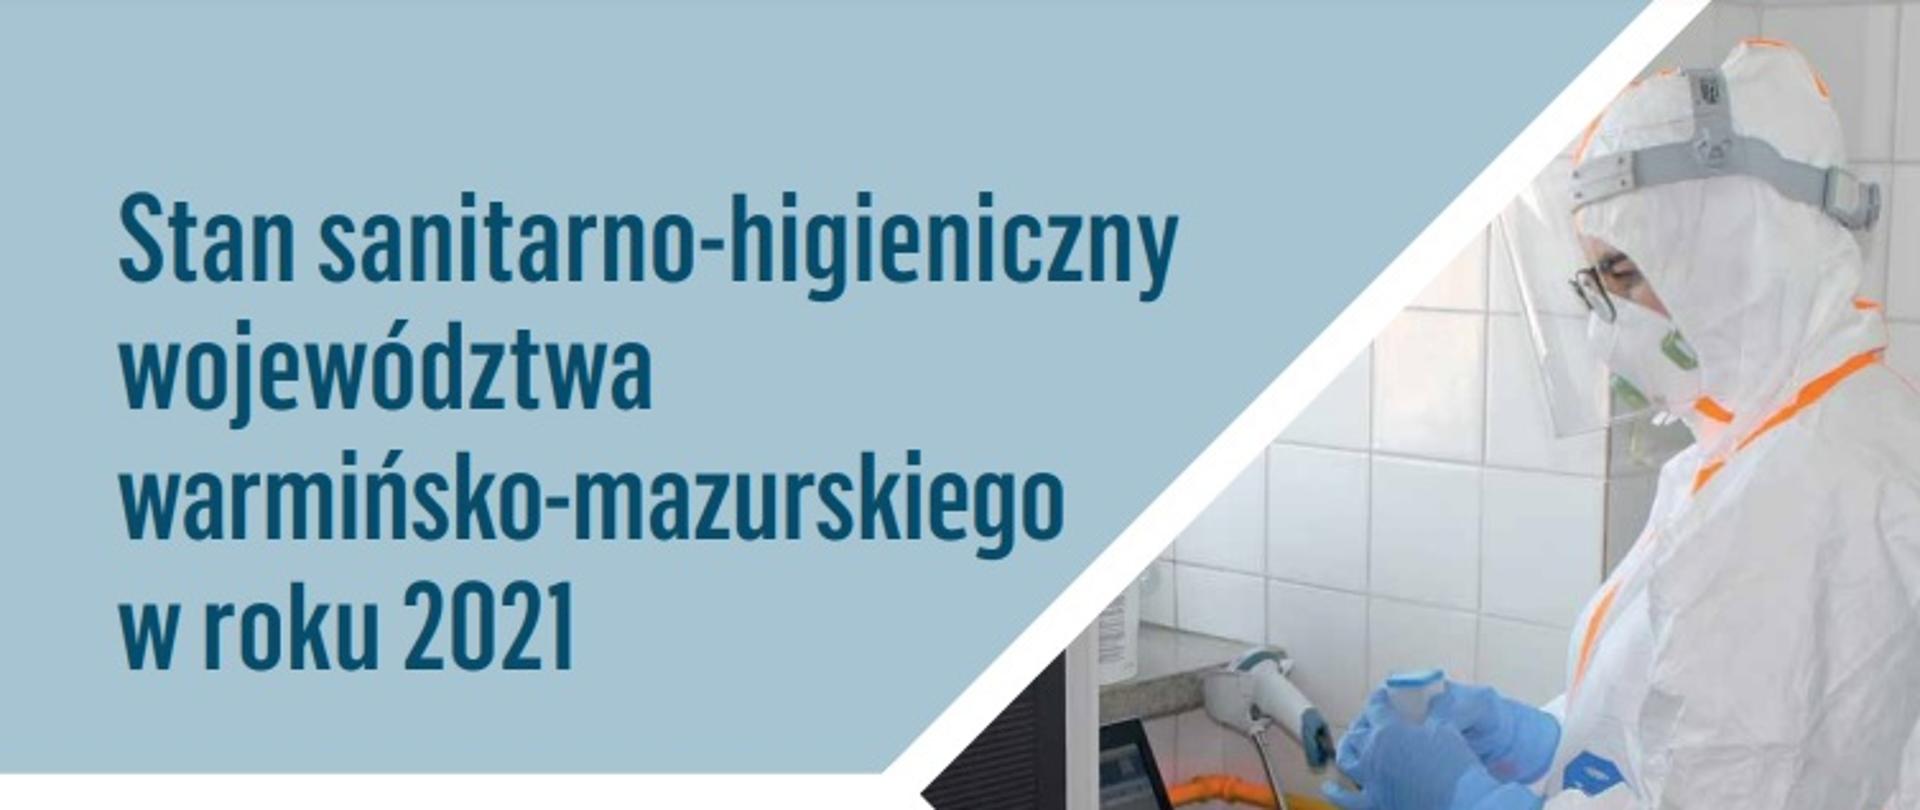 grafika z napisem Stan sanitarno-higieniczny województwa warmińsko-mazurskiego w 2021 roku, po prawej stronie grafiki zdjęcie pracownika laboratorium w kombinezonie covidowym